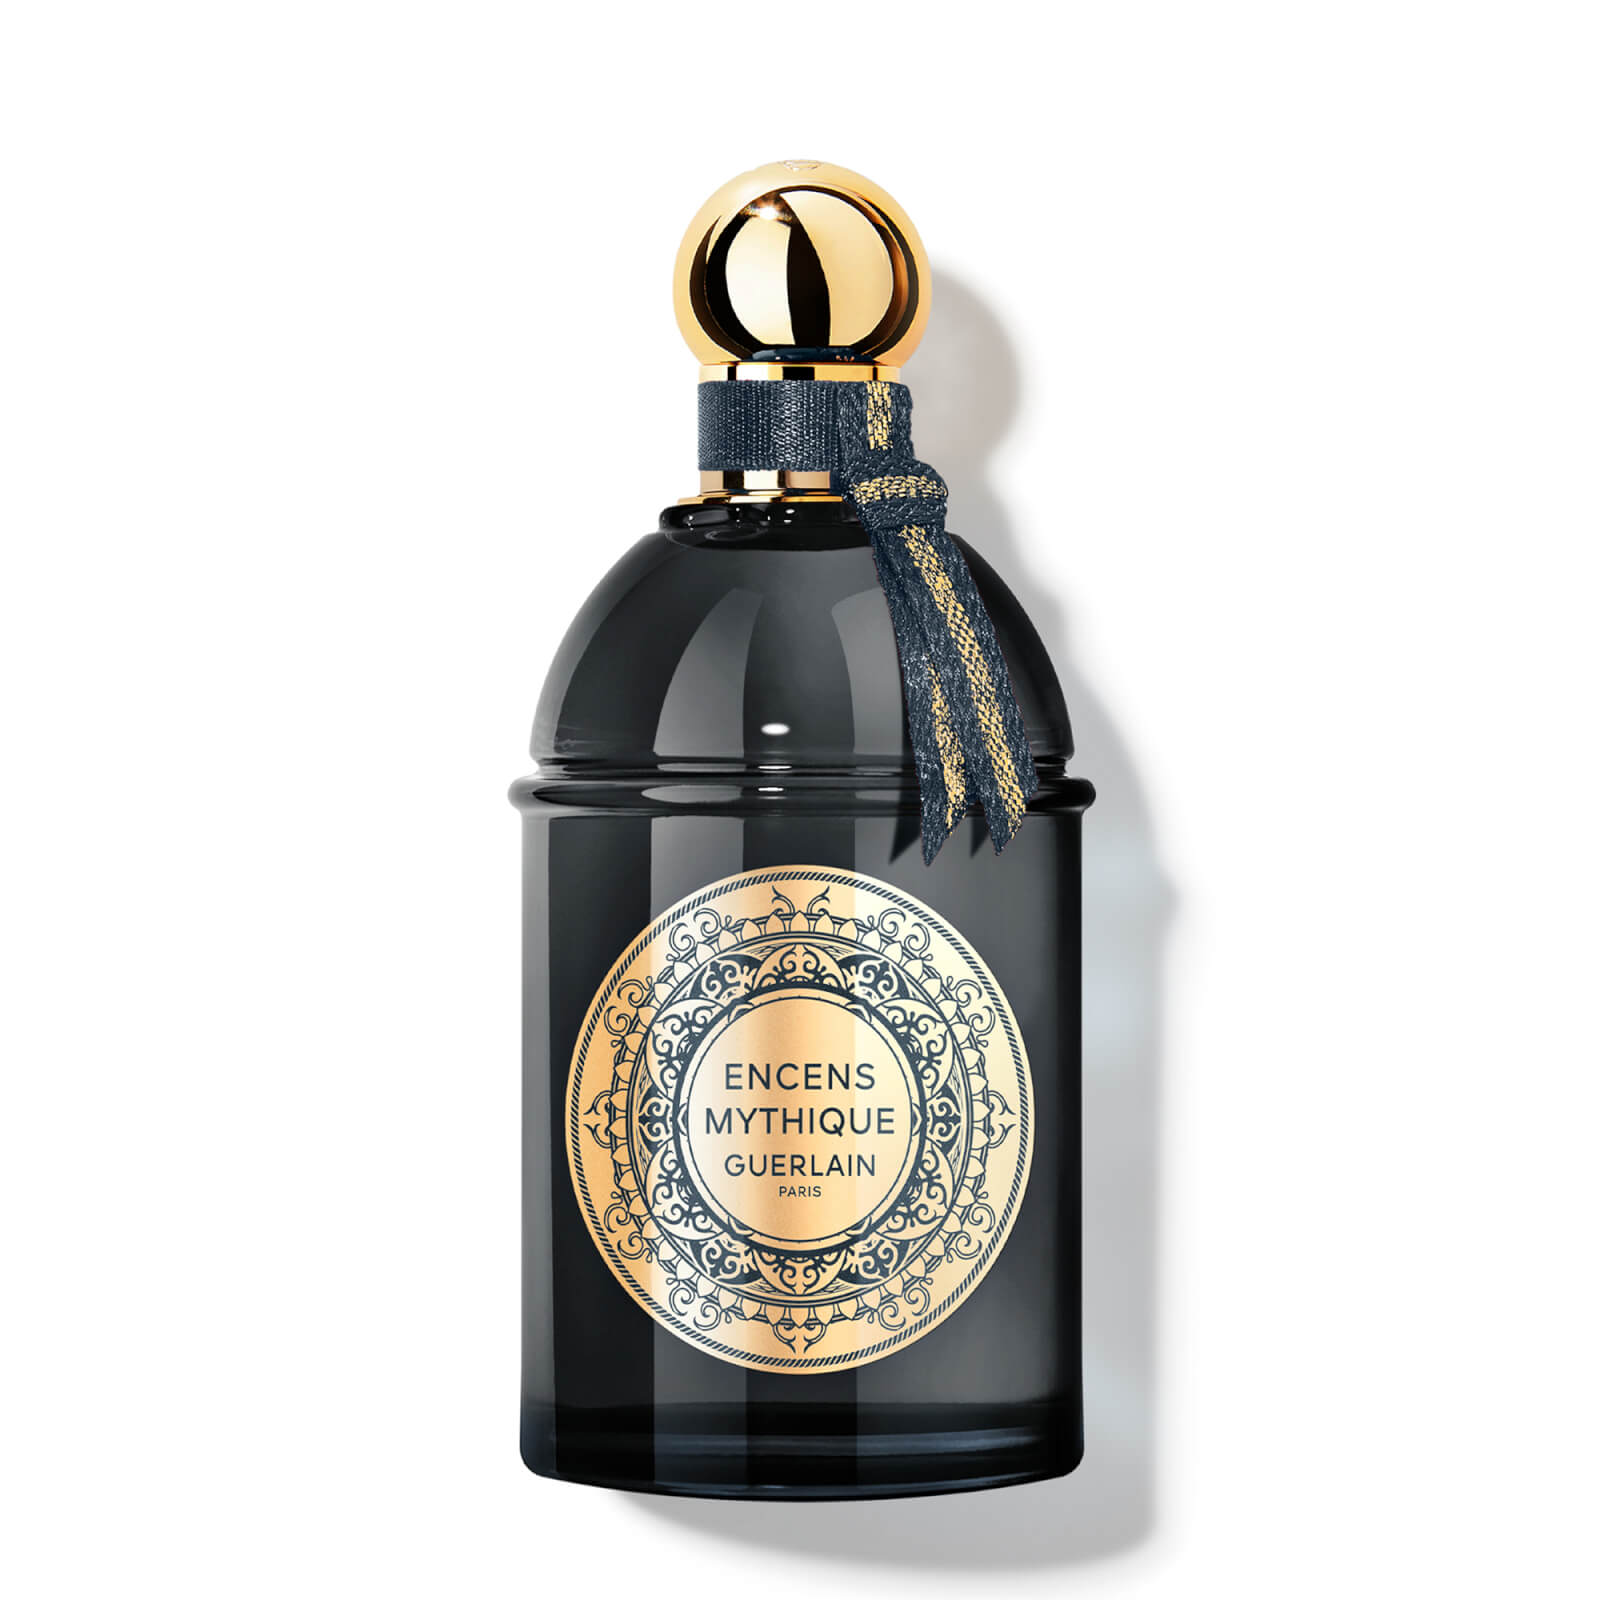 Photos - Women's Fragrance Guerlain Les Absolus D'Orient Encens Mythique Eau De Parfum 125ml 